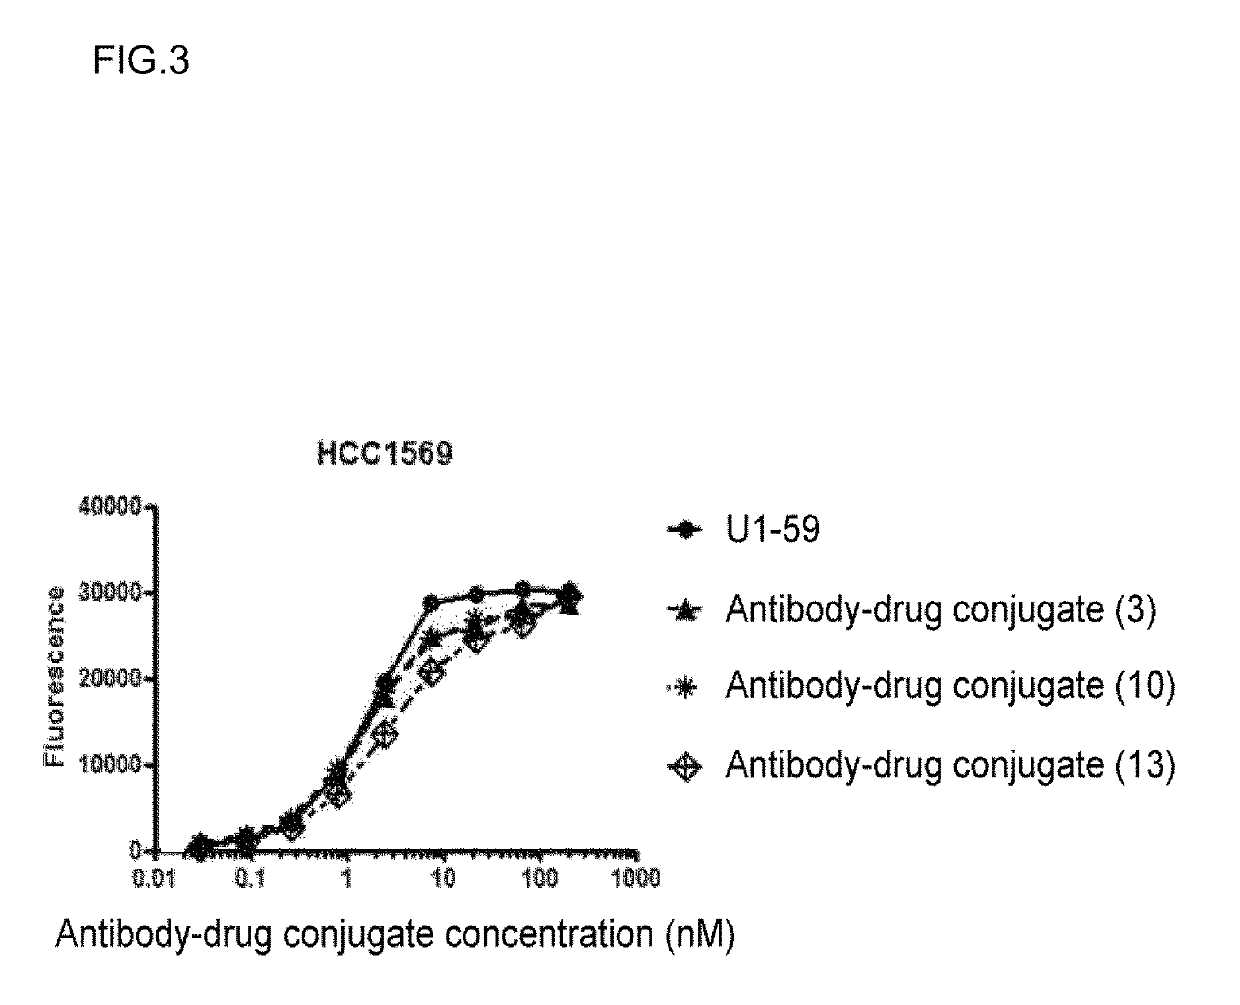 Anti-HER3 antibody-drug conjugate